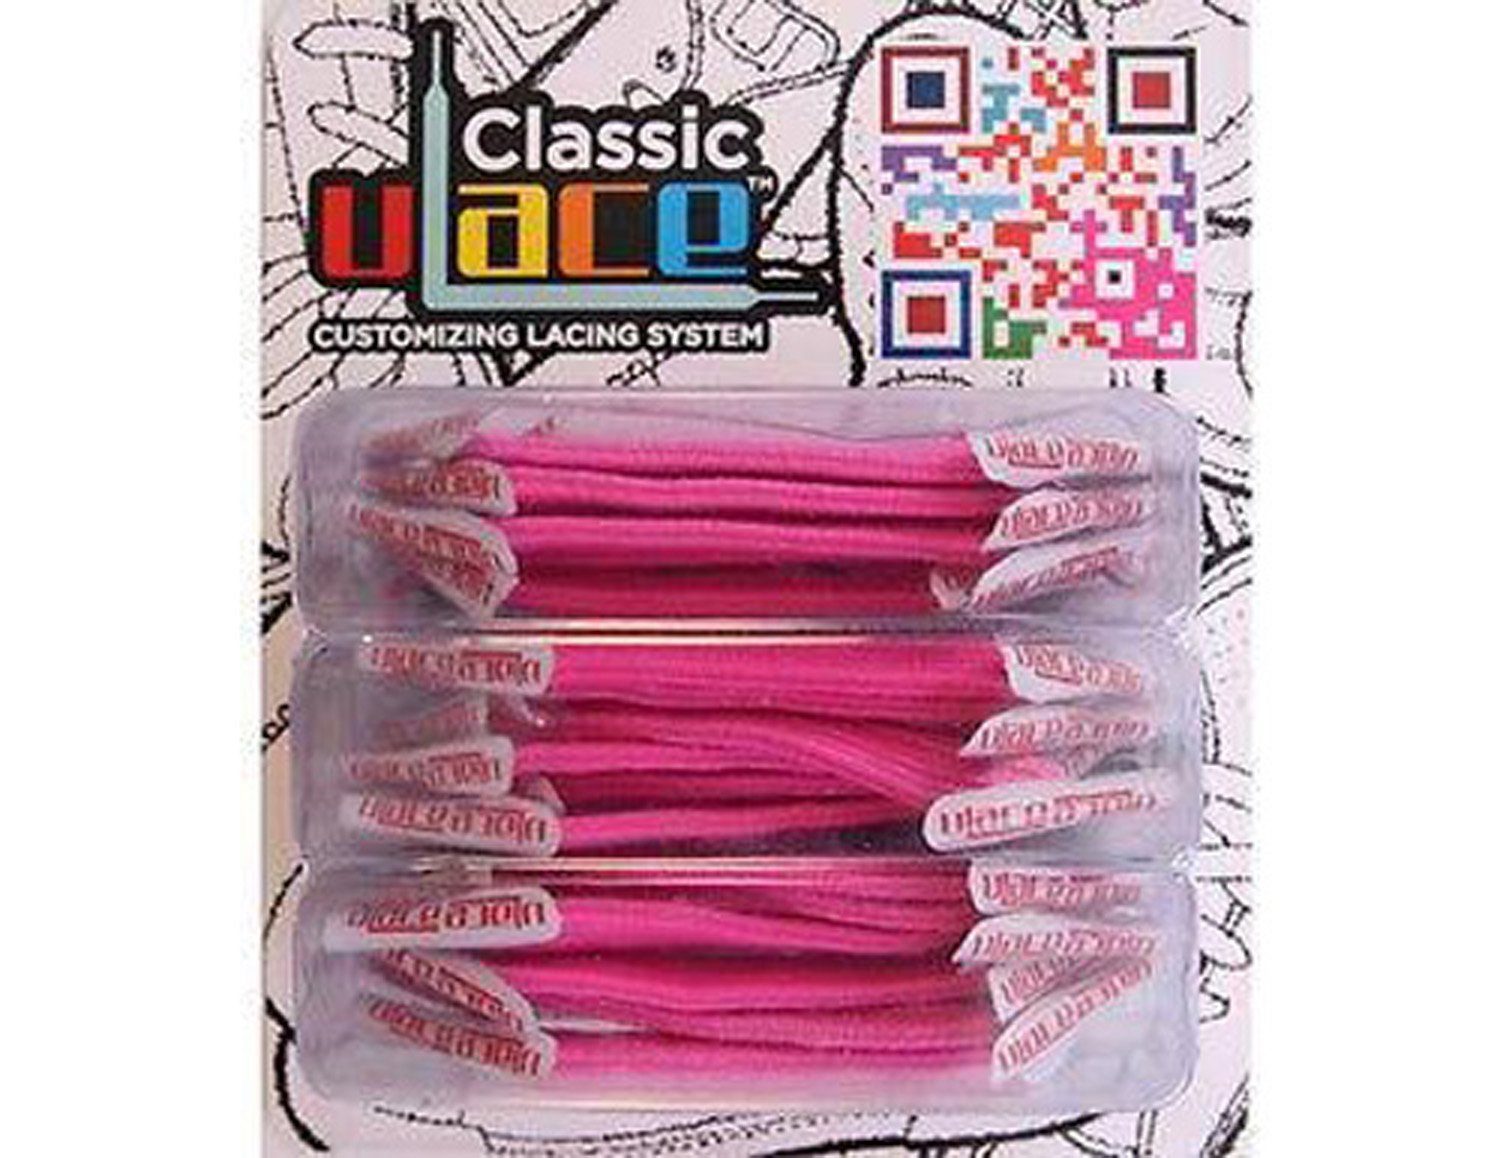 U-Laces Schnürsenkel Classic 18 elastische Stück - Schnürsenkel Hot Pink Wiederhaken mit